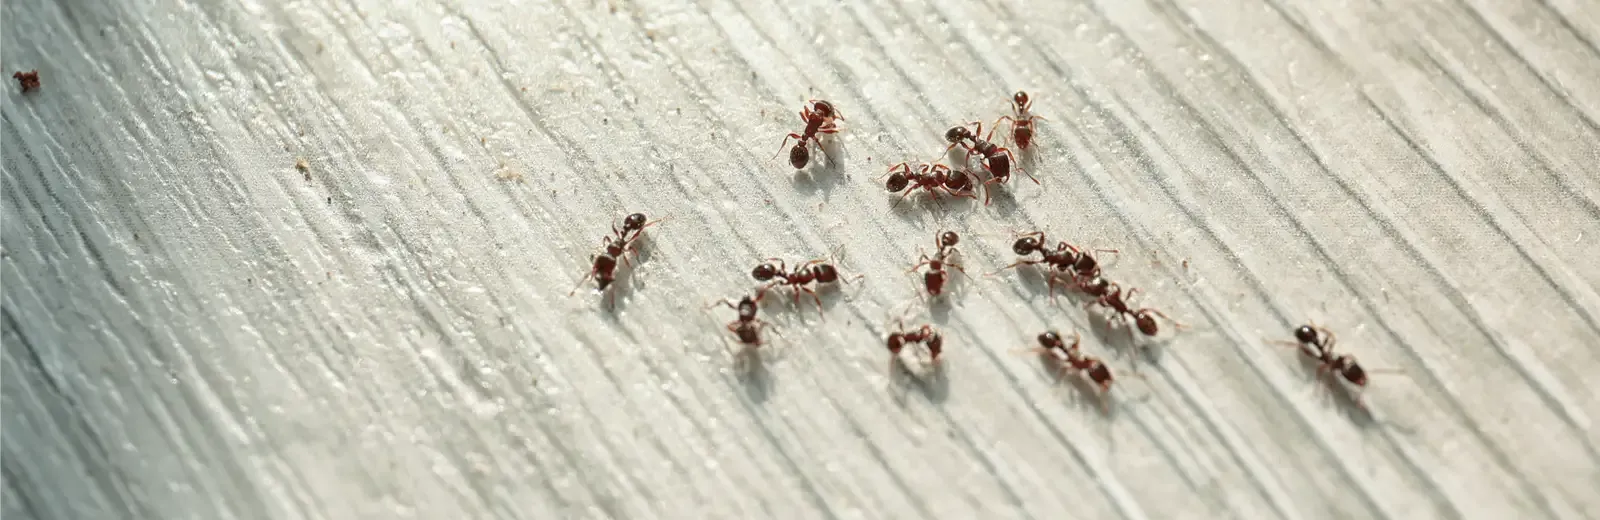 ants on kitchen floor